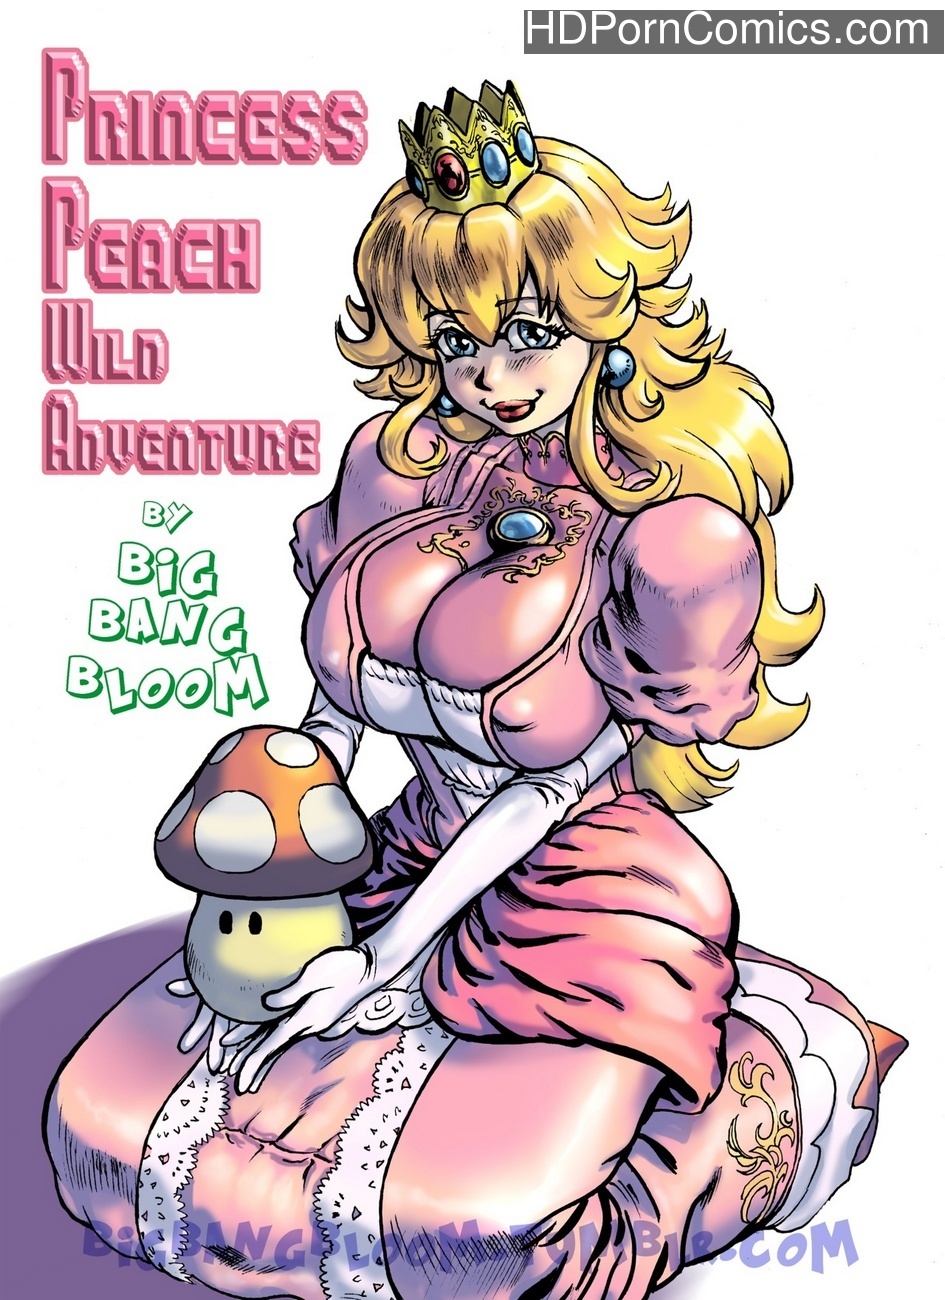 Peach Banged - Princess Peach Wild Adventure 1 Sex Comic | HD Porn Comics